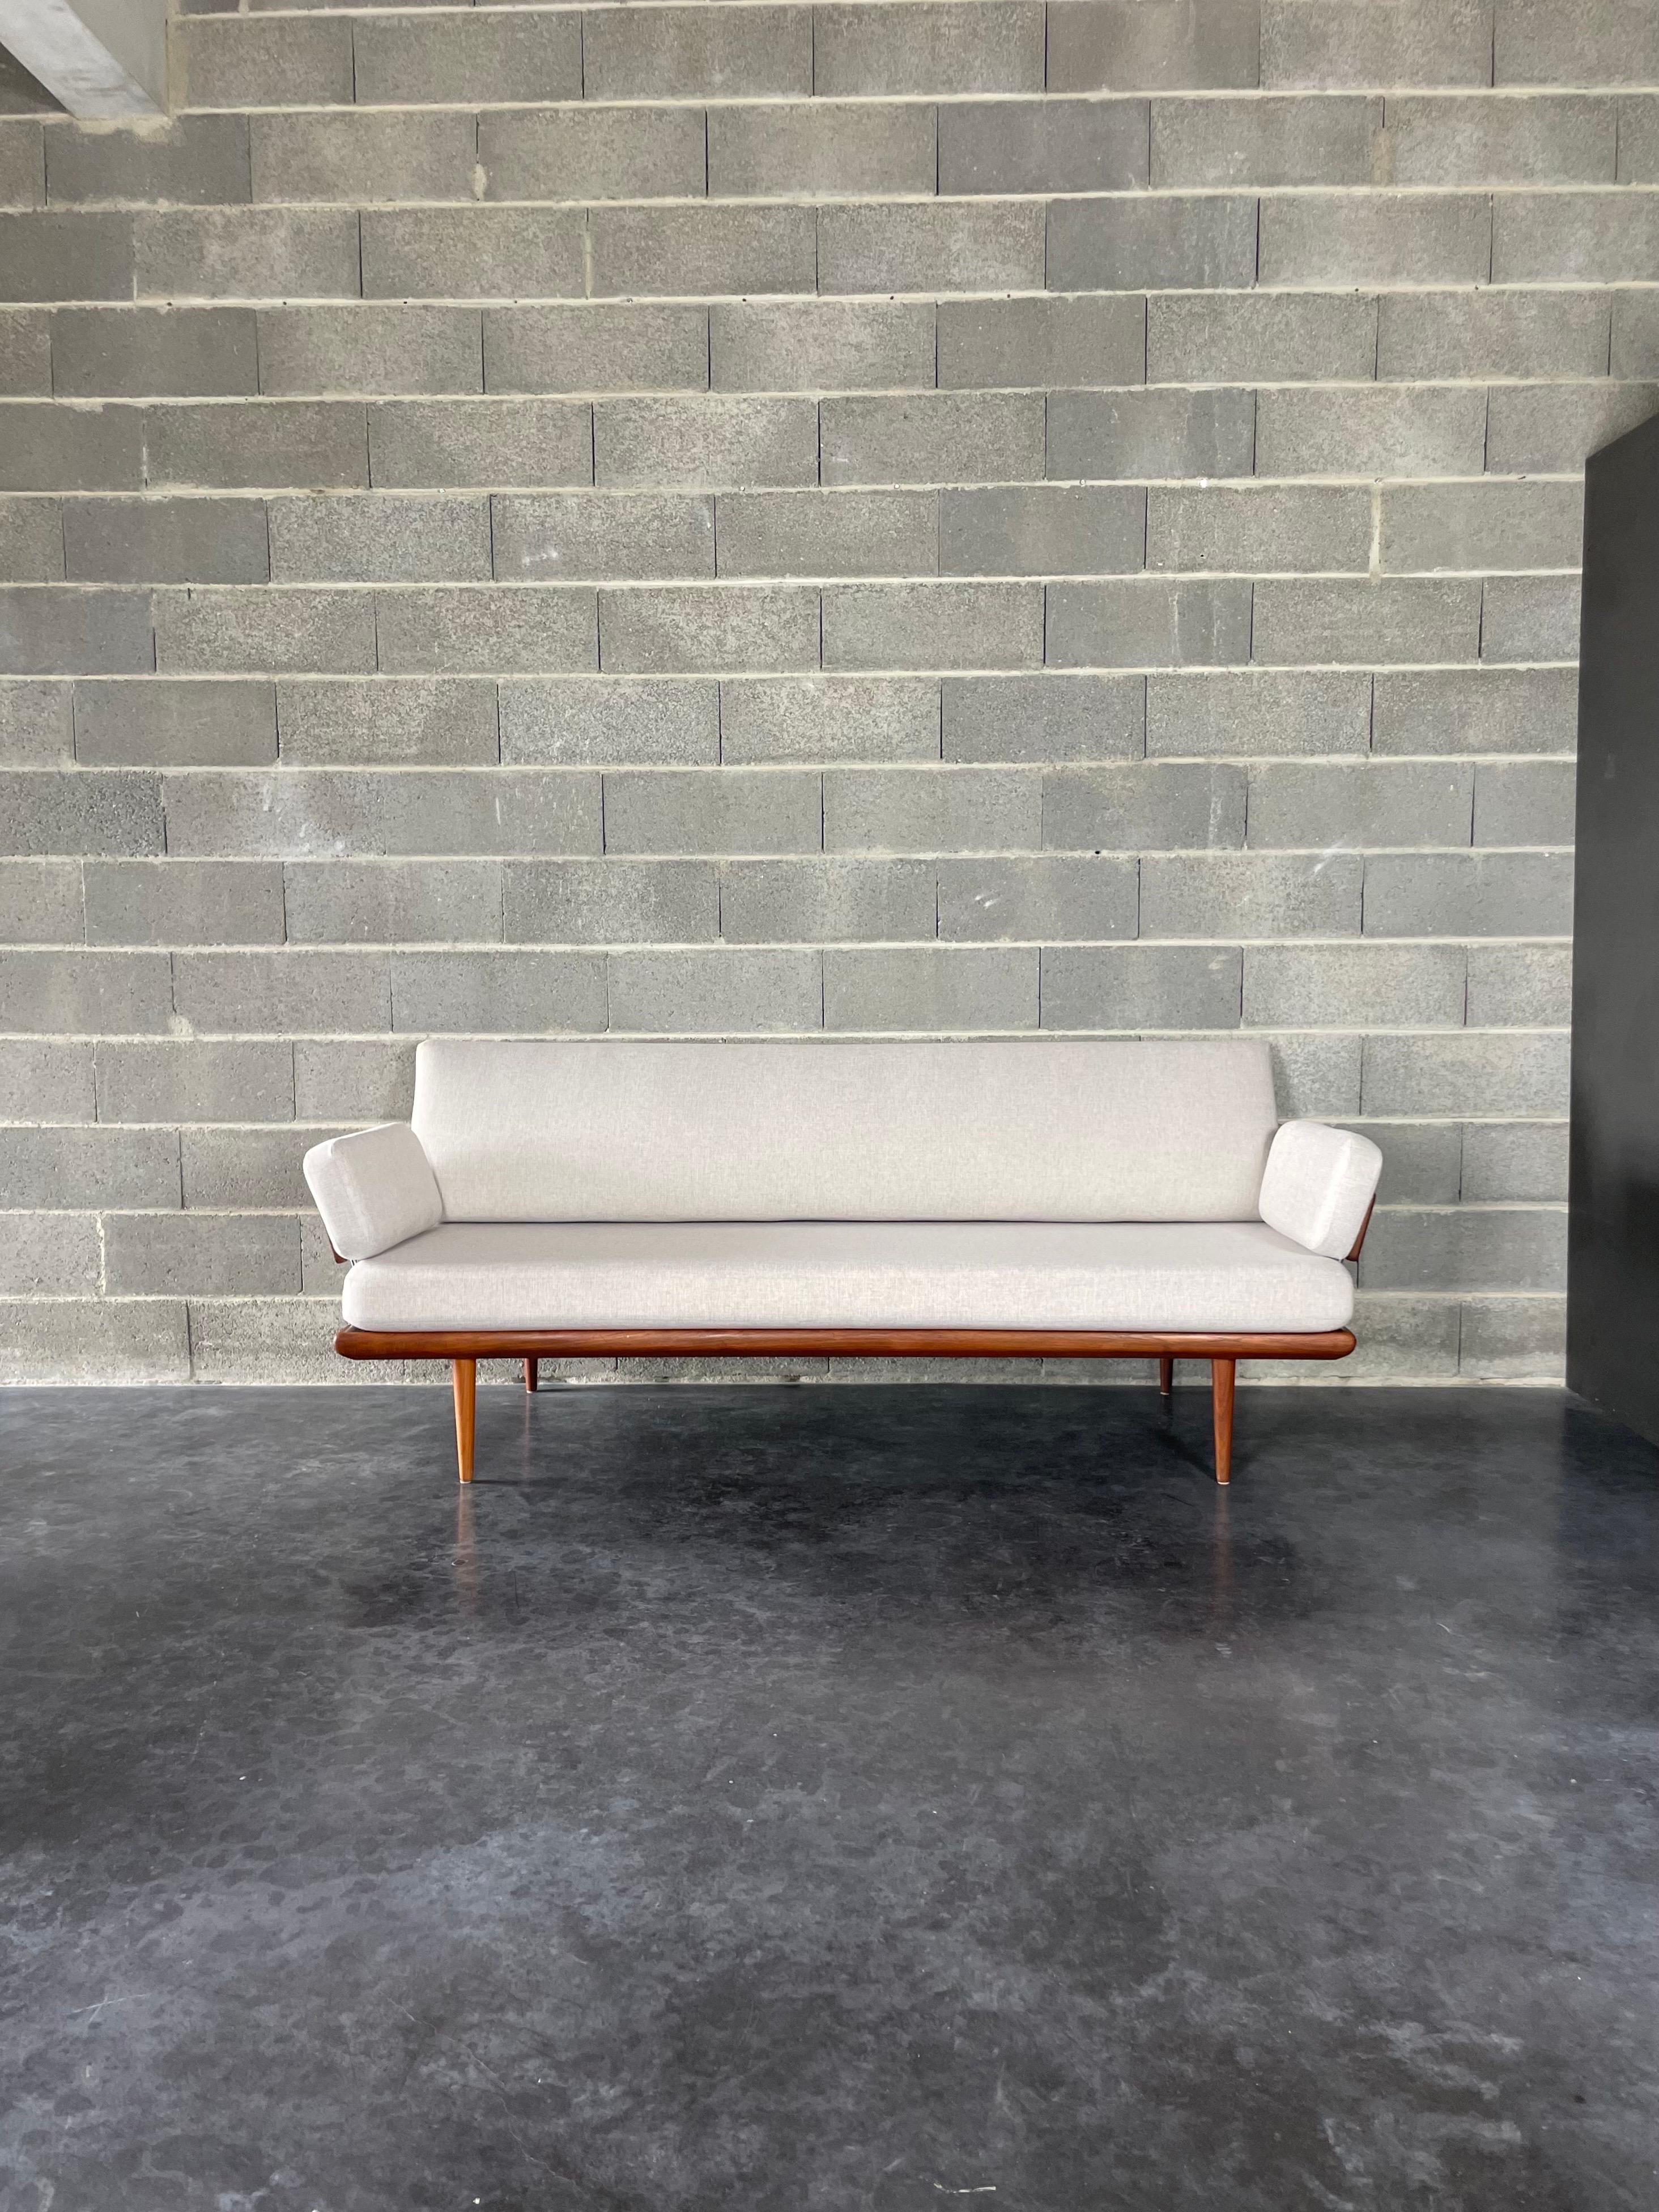 3-Sitzer-Sofa und Daybed aus der Mitte des Jahrhunderts, entworfen von den dänischen Architekten Peter Hvidt & Orla Mølgaard Nielsen. Produziert in Dänemark von France & Daverkosen in den 1950er Jahren.
Dieses Modell Minerva gehört zu den